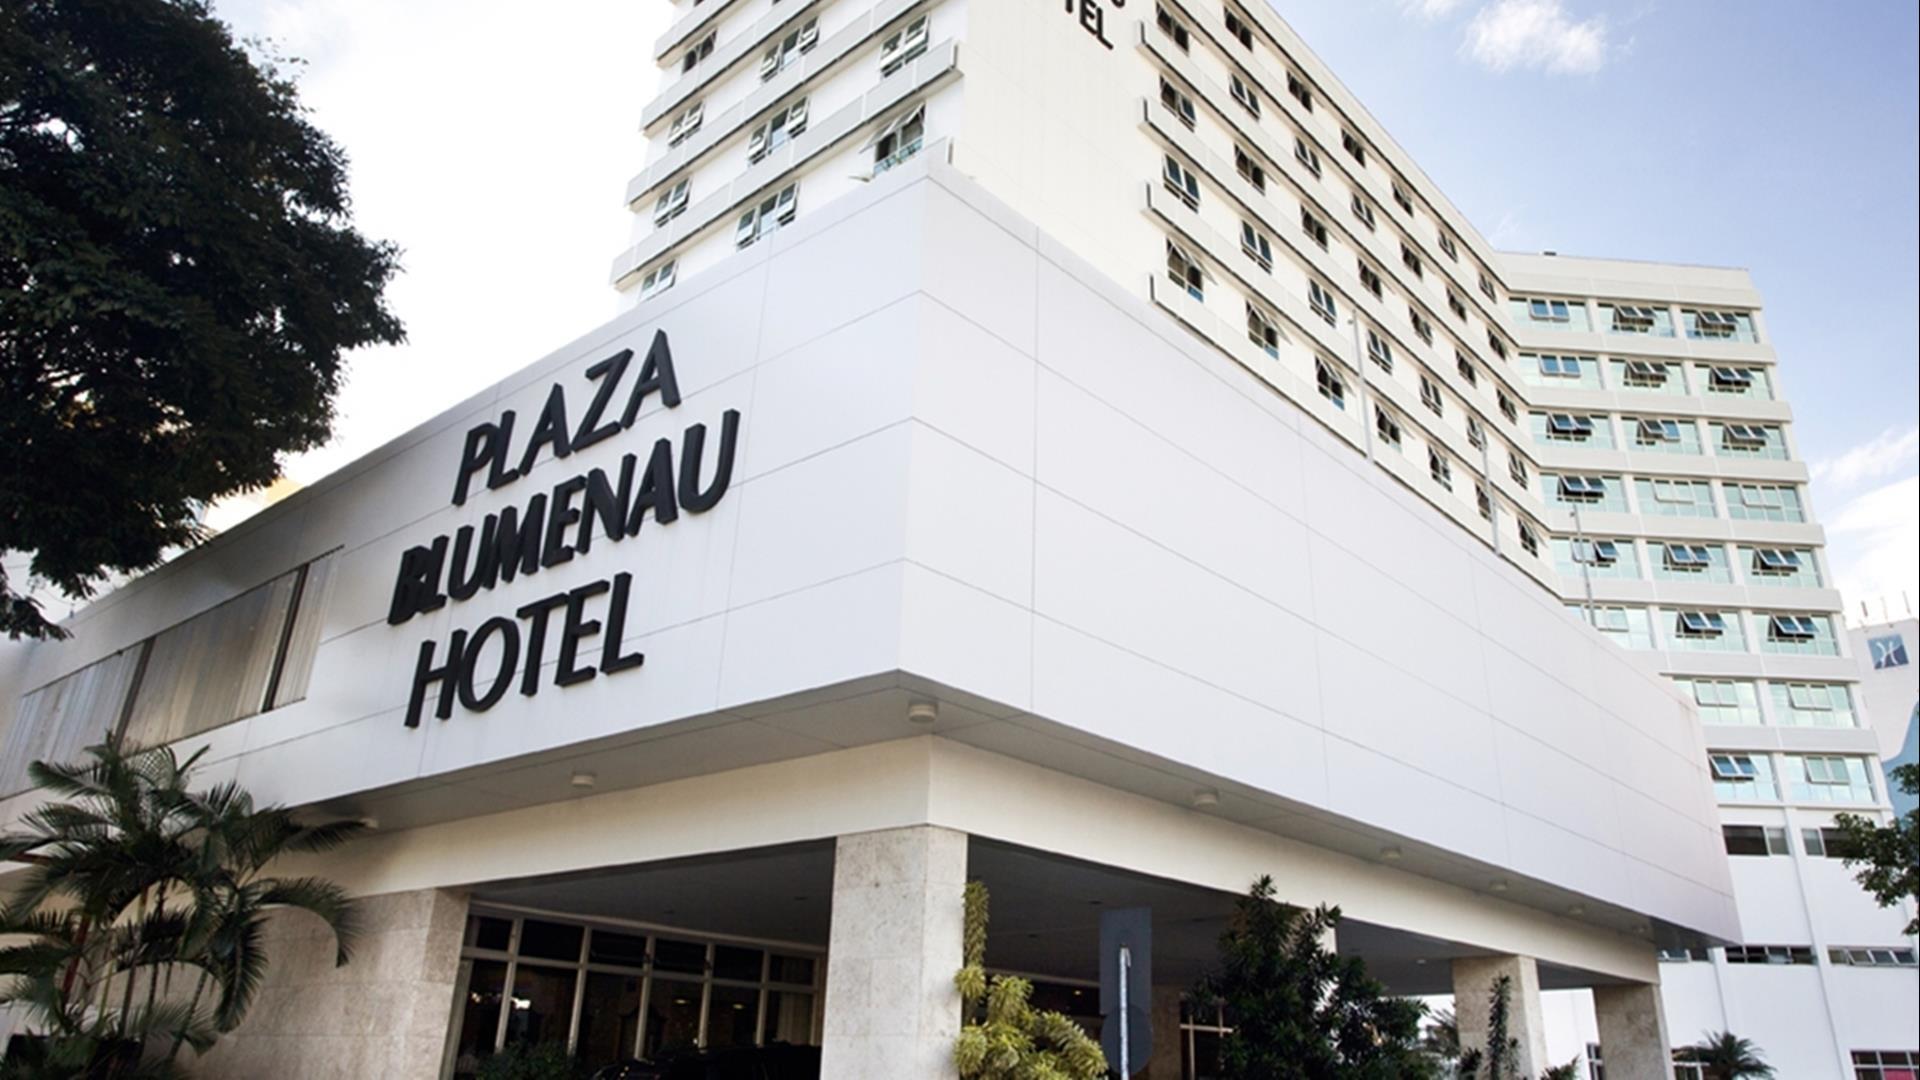 Brasilien Blumenau: Standard Hotel - Hotel Plaza Blumenau